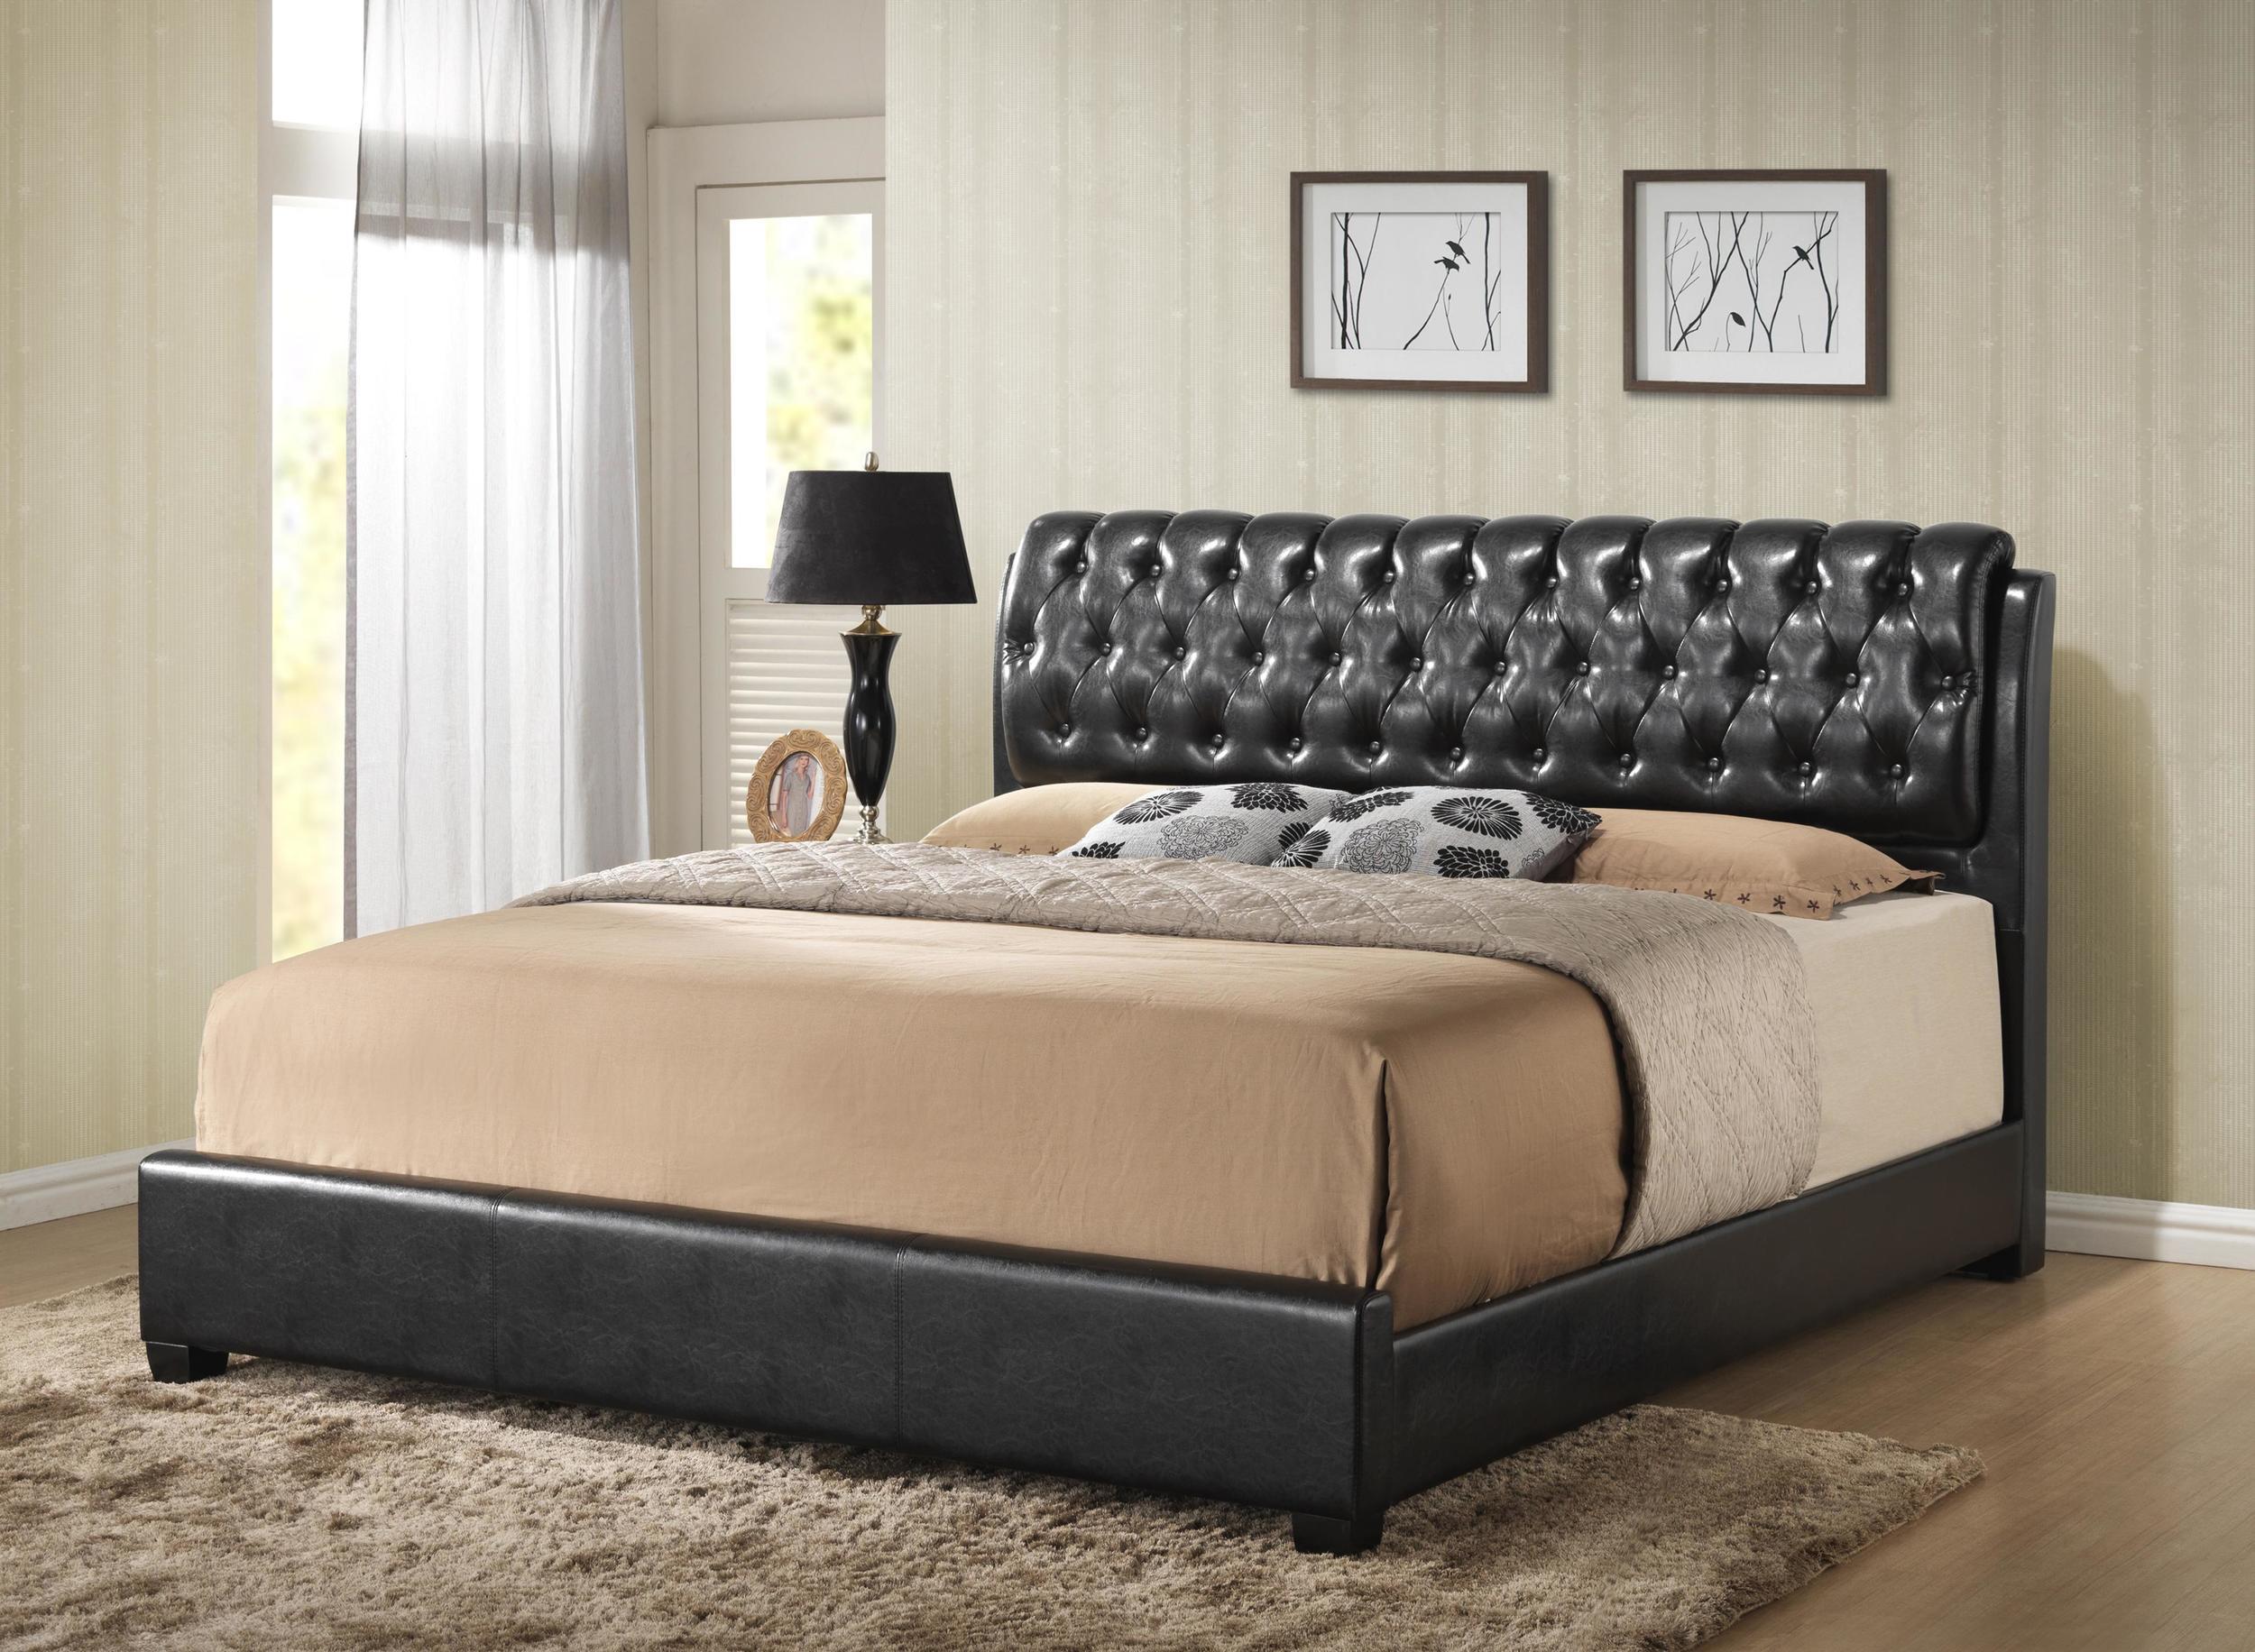 

    
MYCO Furniture 2956K-BK Barnes Black Eco Leather King Platform Bedroom Set 5Pcs
